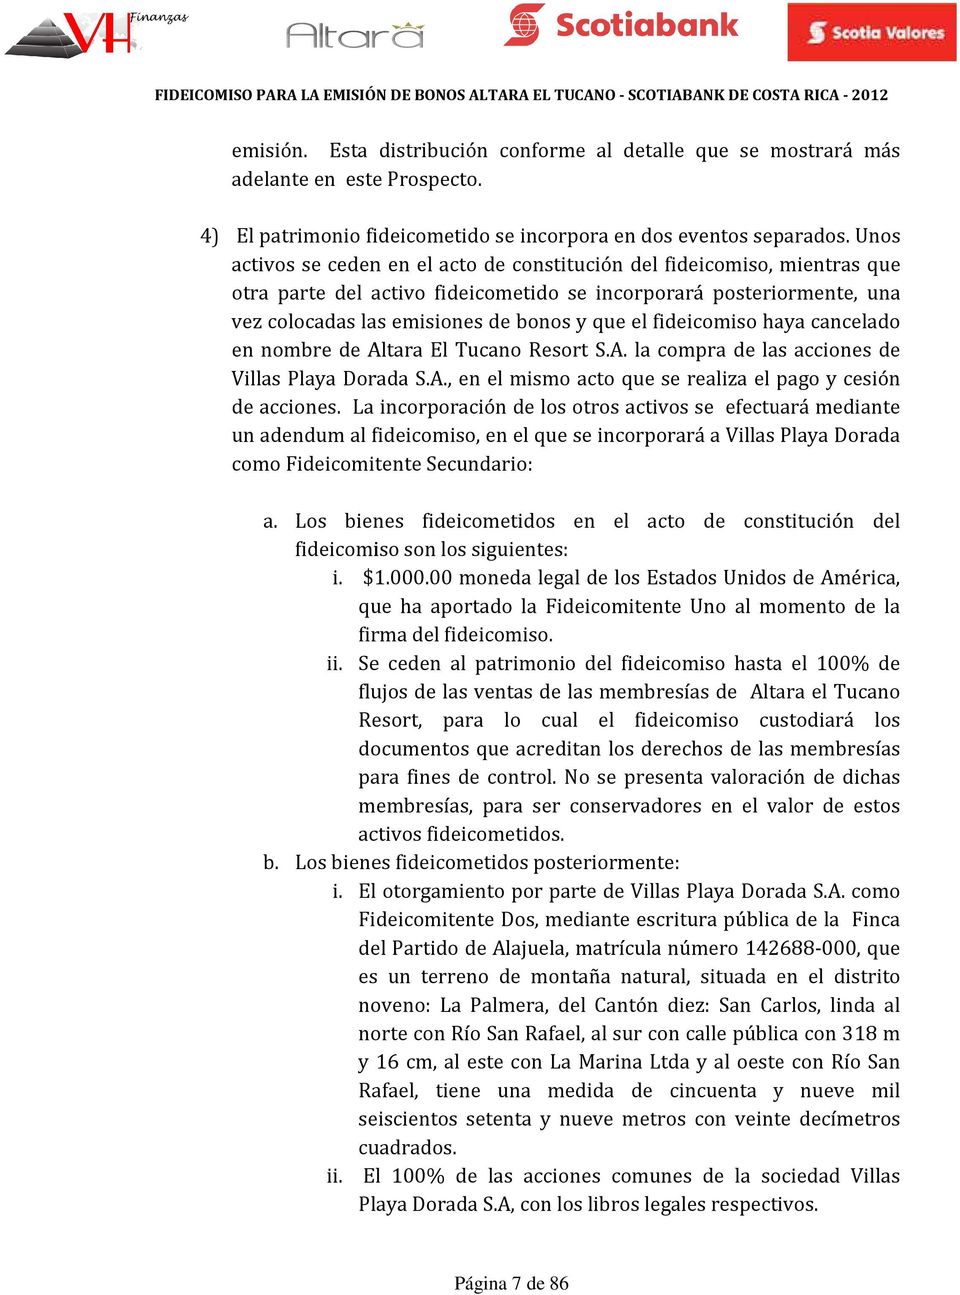 fideicomiso haya cancelado en nombre de Altara El Tucano Resort S.A. la compra de las acciones de Villas Playa Dorada S.A., en el mismo acto que se realiza el pago y cesión de acciones.